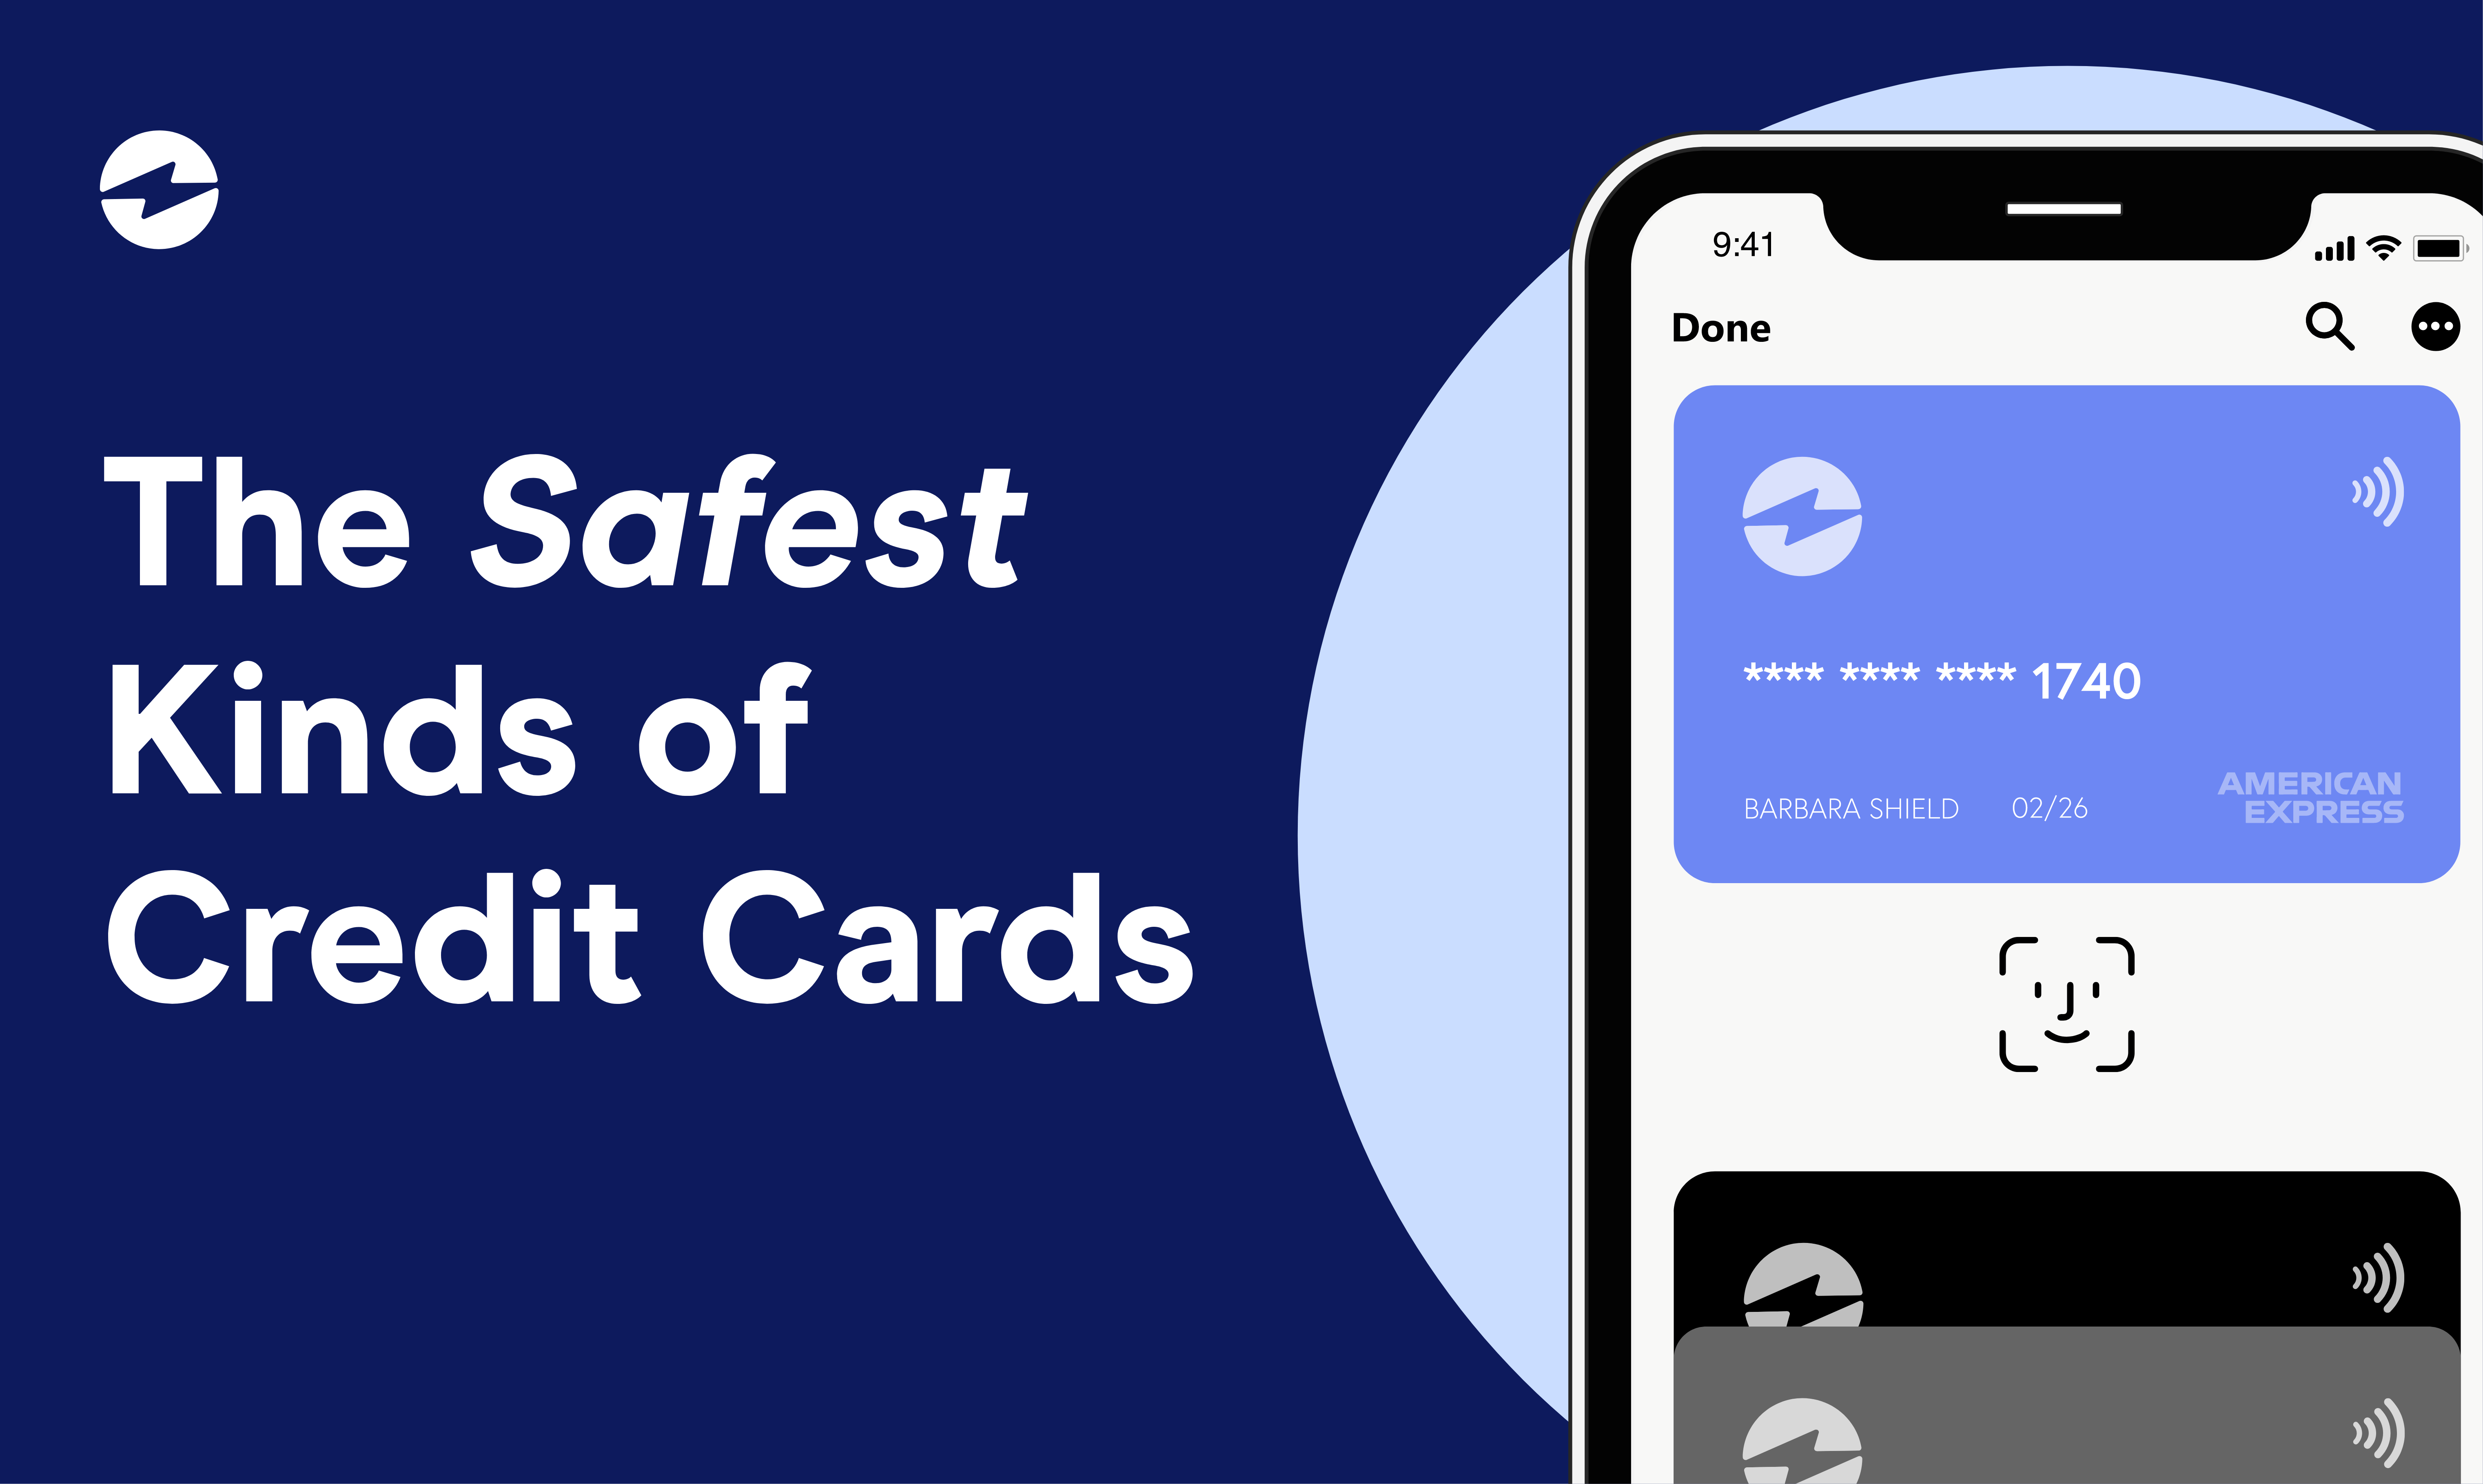 The Safest Kinds of Credit Cards